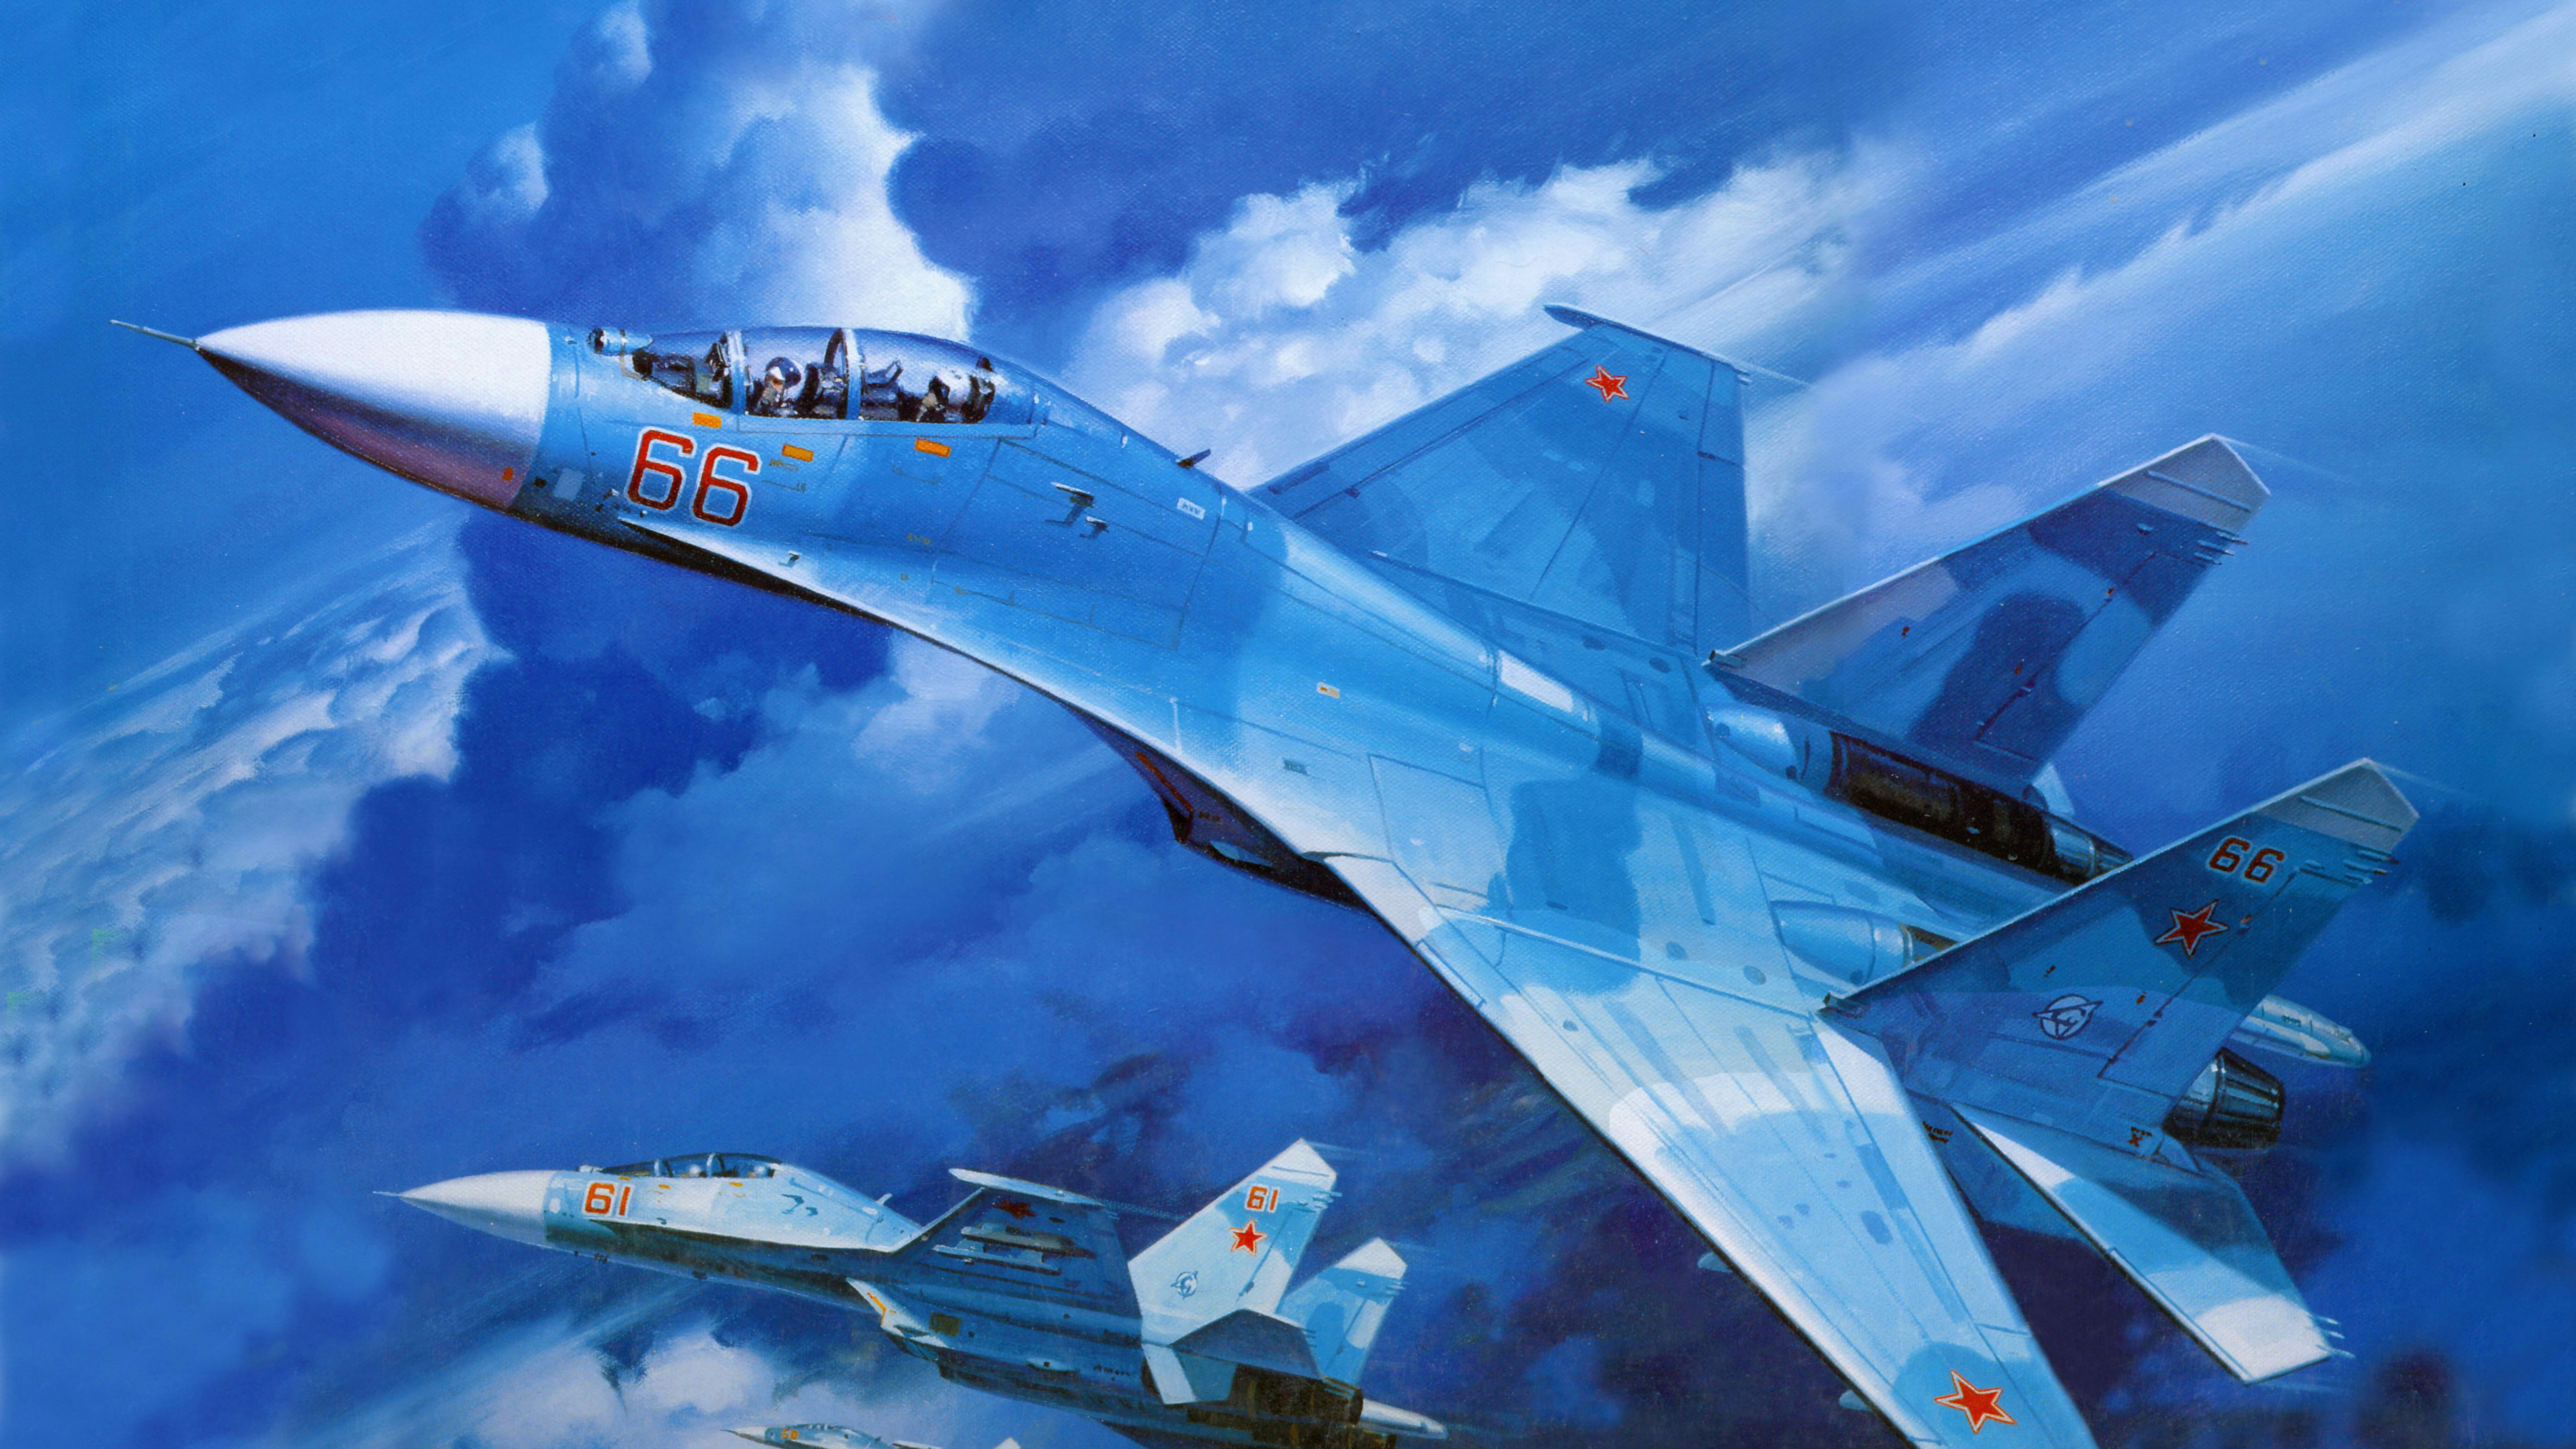 Weißes Und Blaues Düsenflugzeug Unter Blauem Himmel Tagsüber. Wallpaper in 7680x4320 Resolution